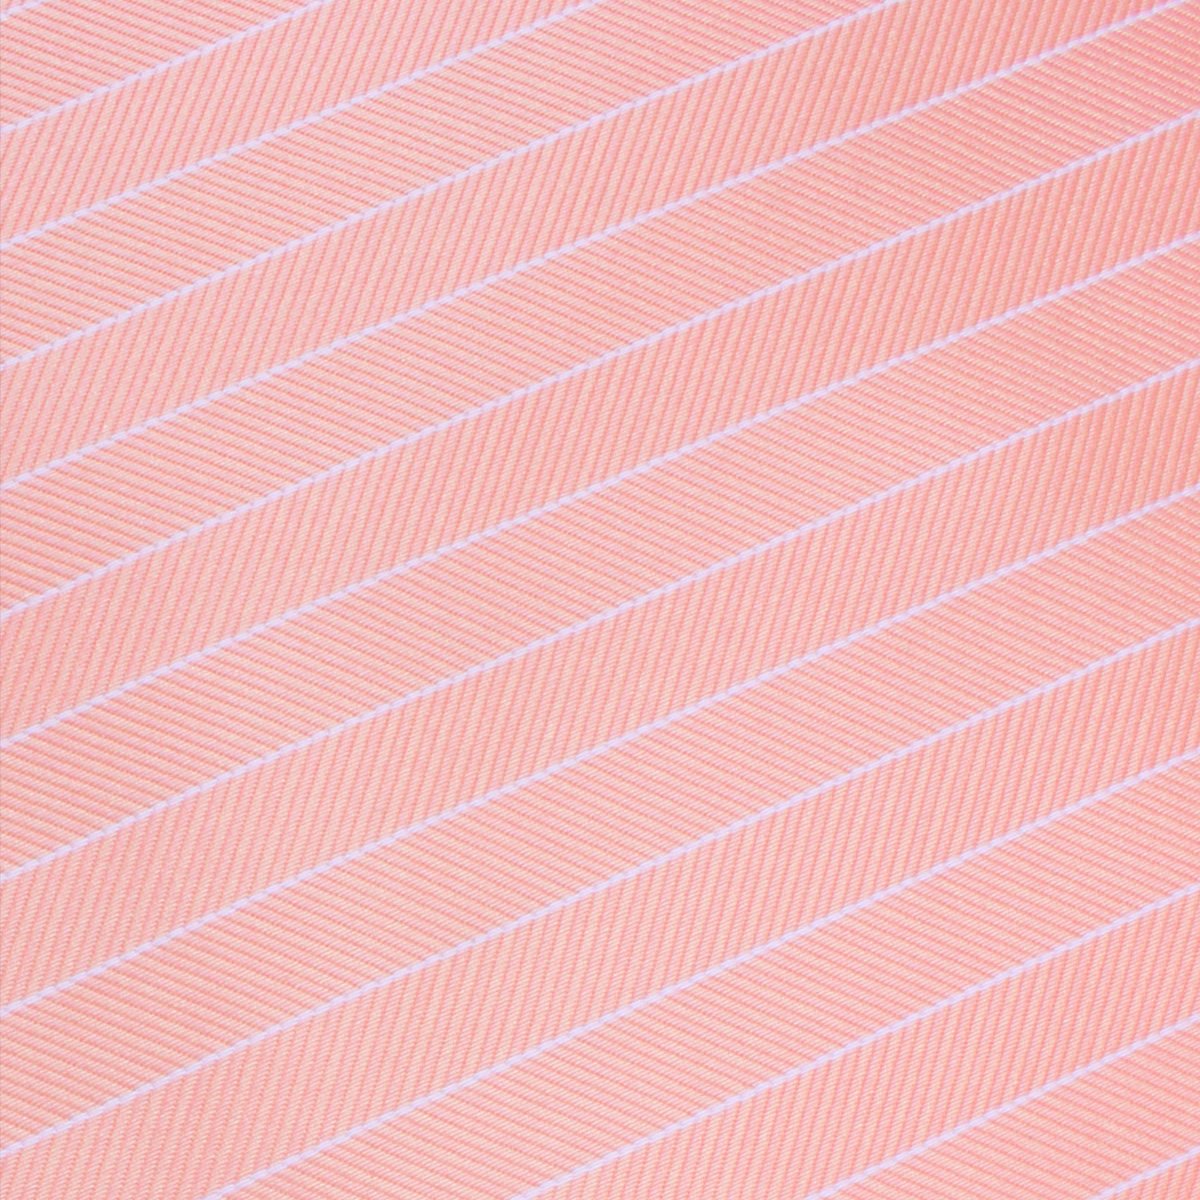 Blush Pink Herringbone Pinstripe Skinny Tie Fabric